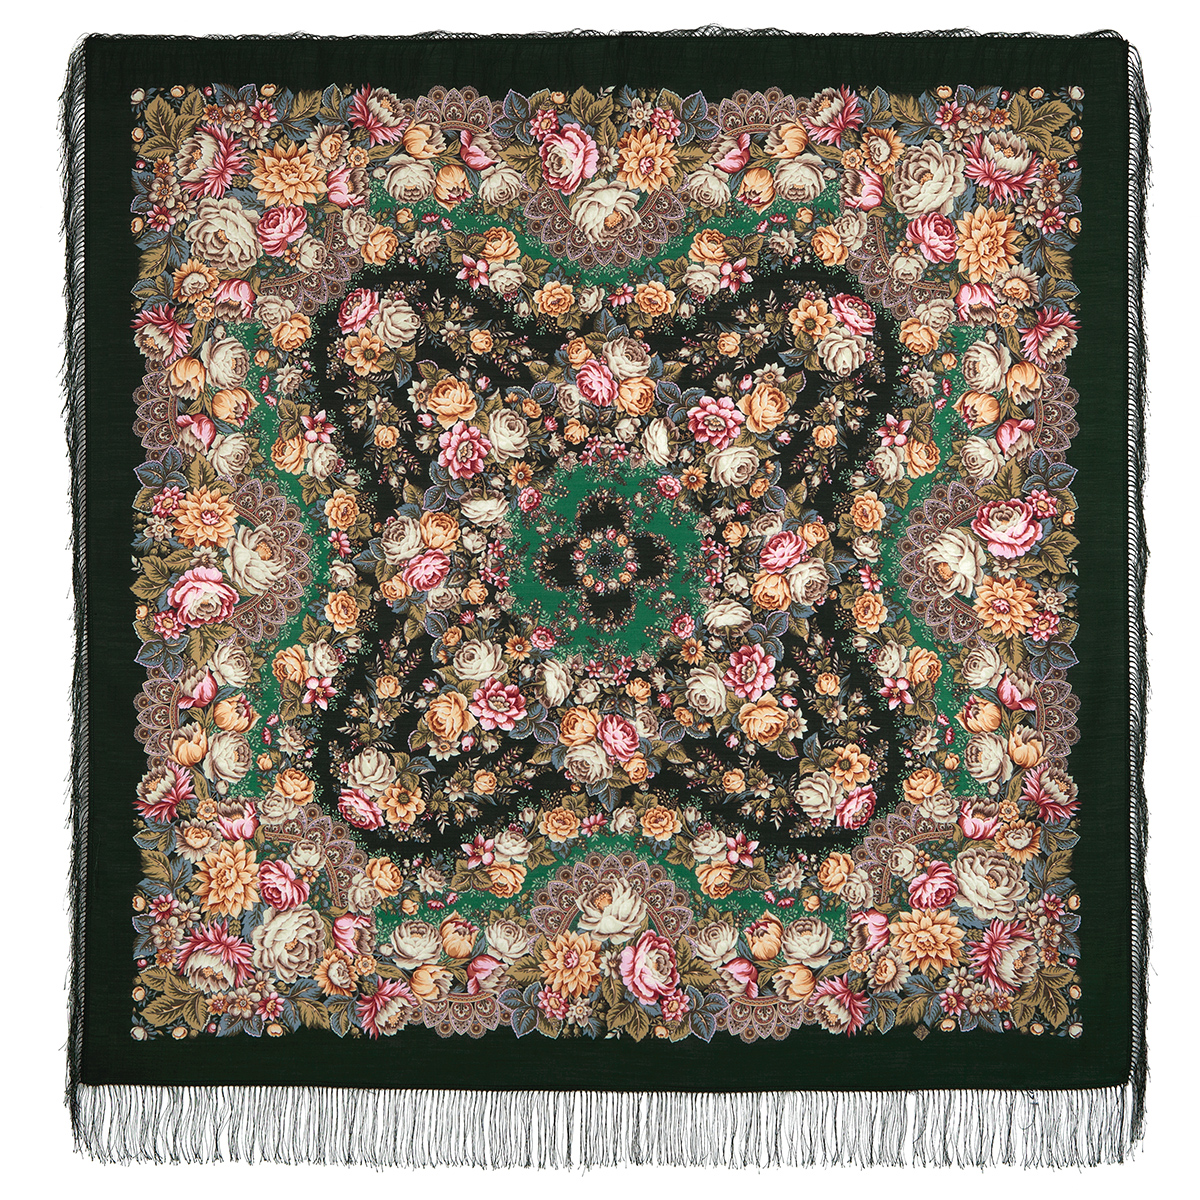 Платок женский Павловопосадский платок 1797 темно-зеленый/бежевый/розовый, 146х146 см